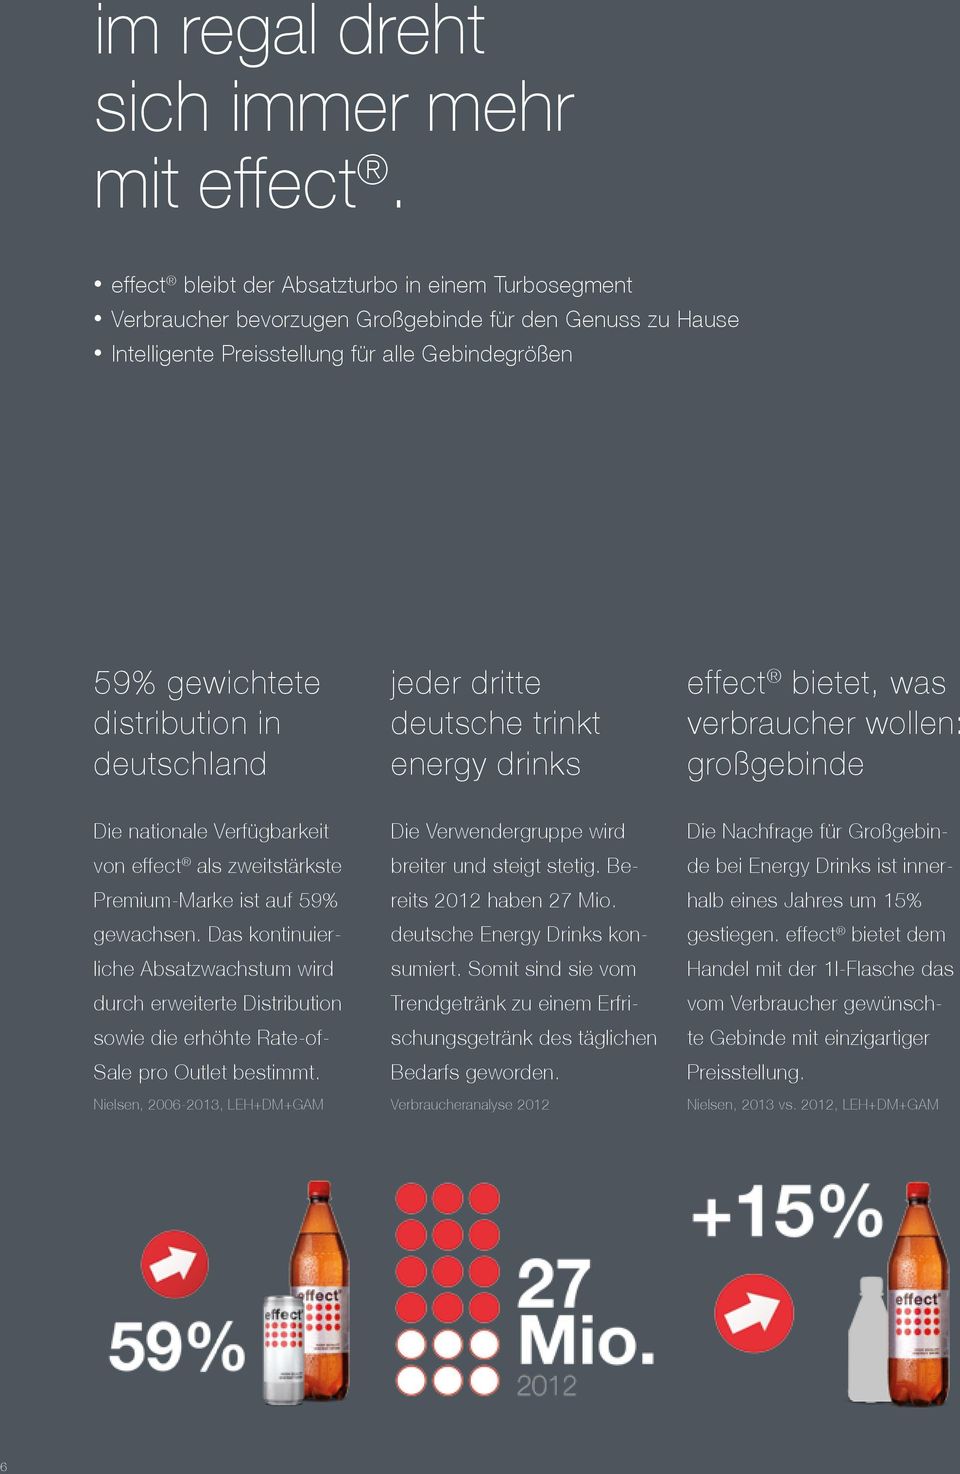 deutschland jeder dritte deutsche trinkt energy drinks effect bietet, was verbraucher wollen: großgebinde Die nationale Verfügbarkeit von effect als zweitstärkste Premium-Marke ist auf 59% gewachsen.